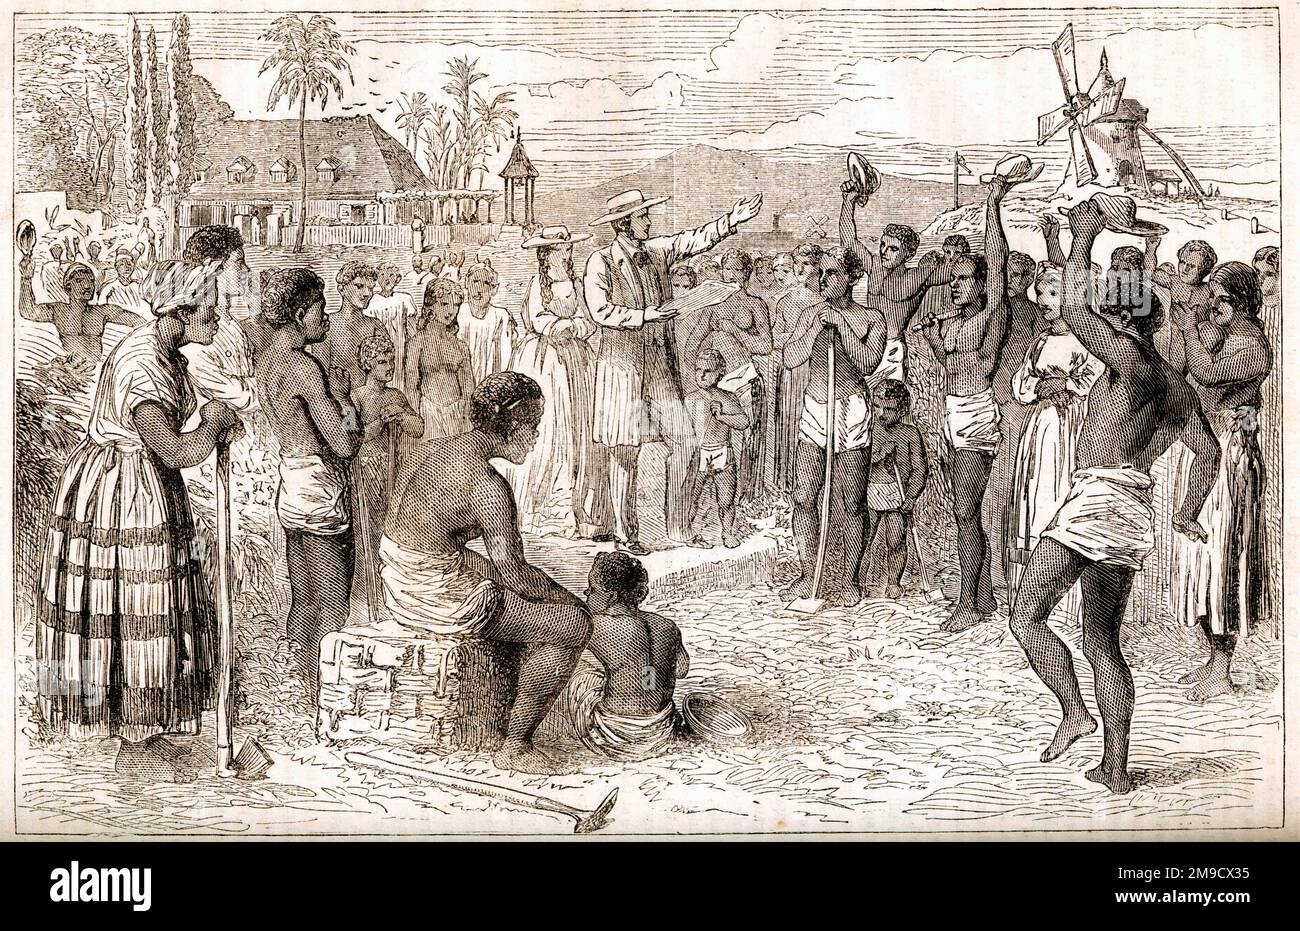 West Indian Plantation - esclaves recevant des nouvelles de leur émancipation Banque D'Images